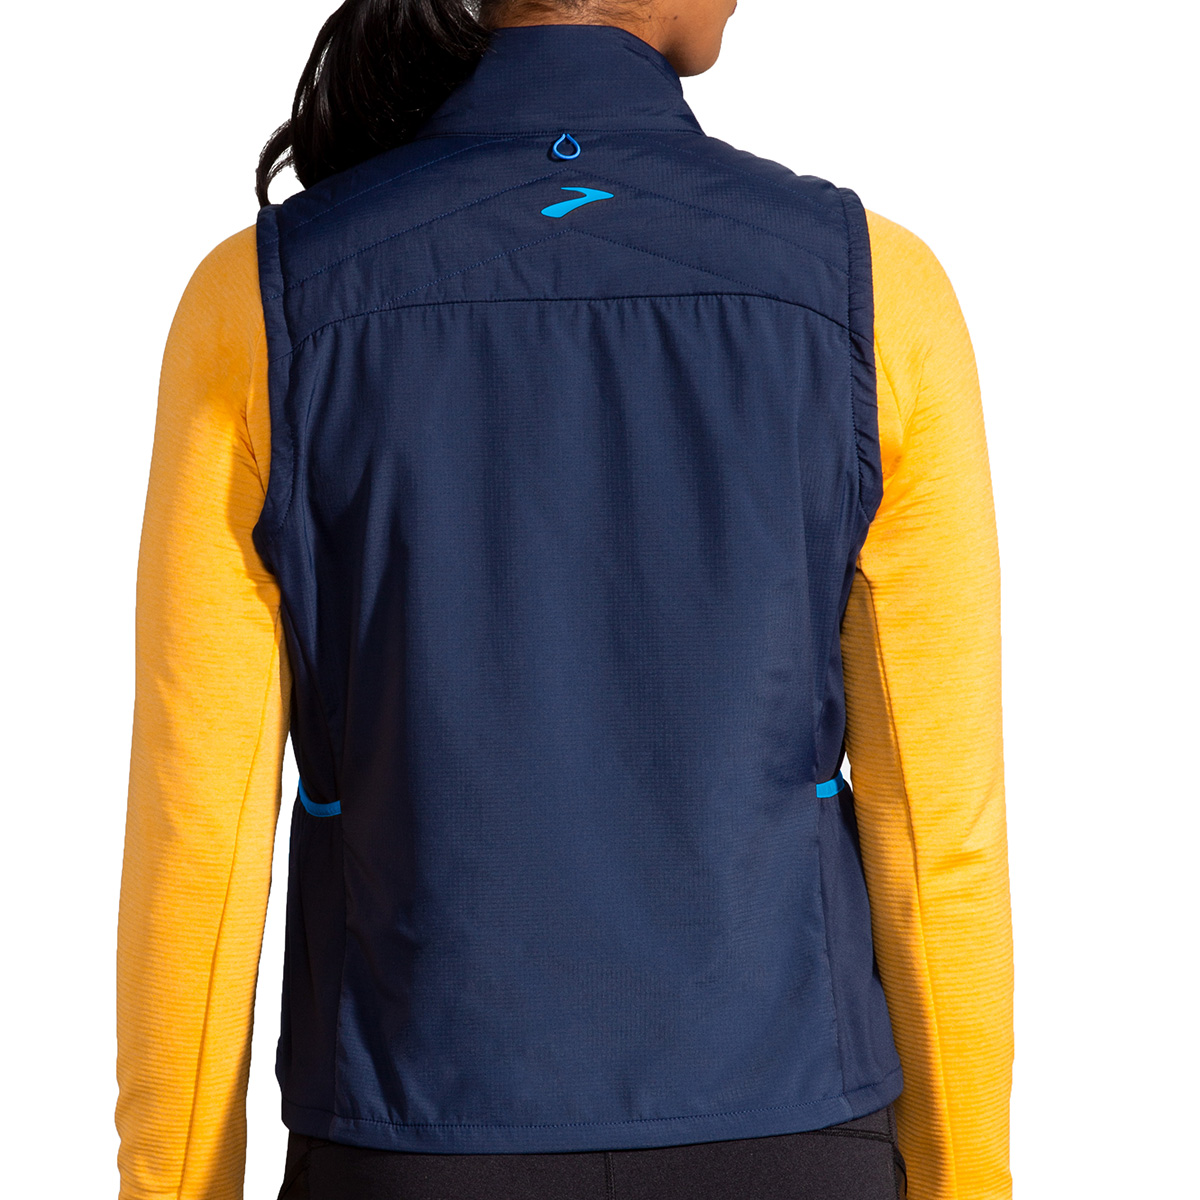 Brooks Shield Hybrid Vest, , large image number null